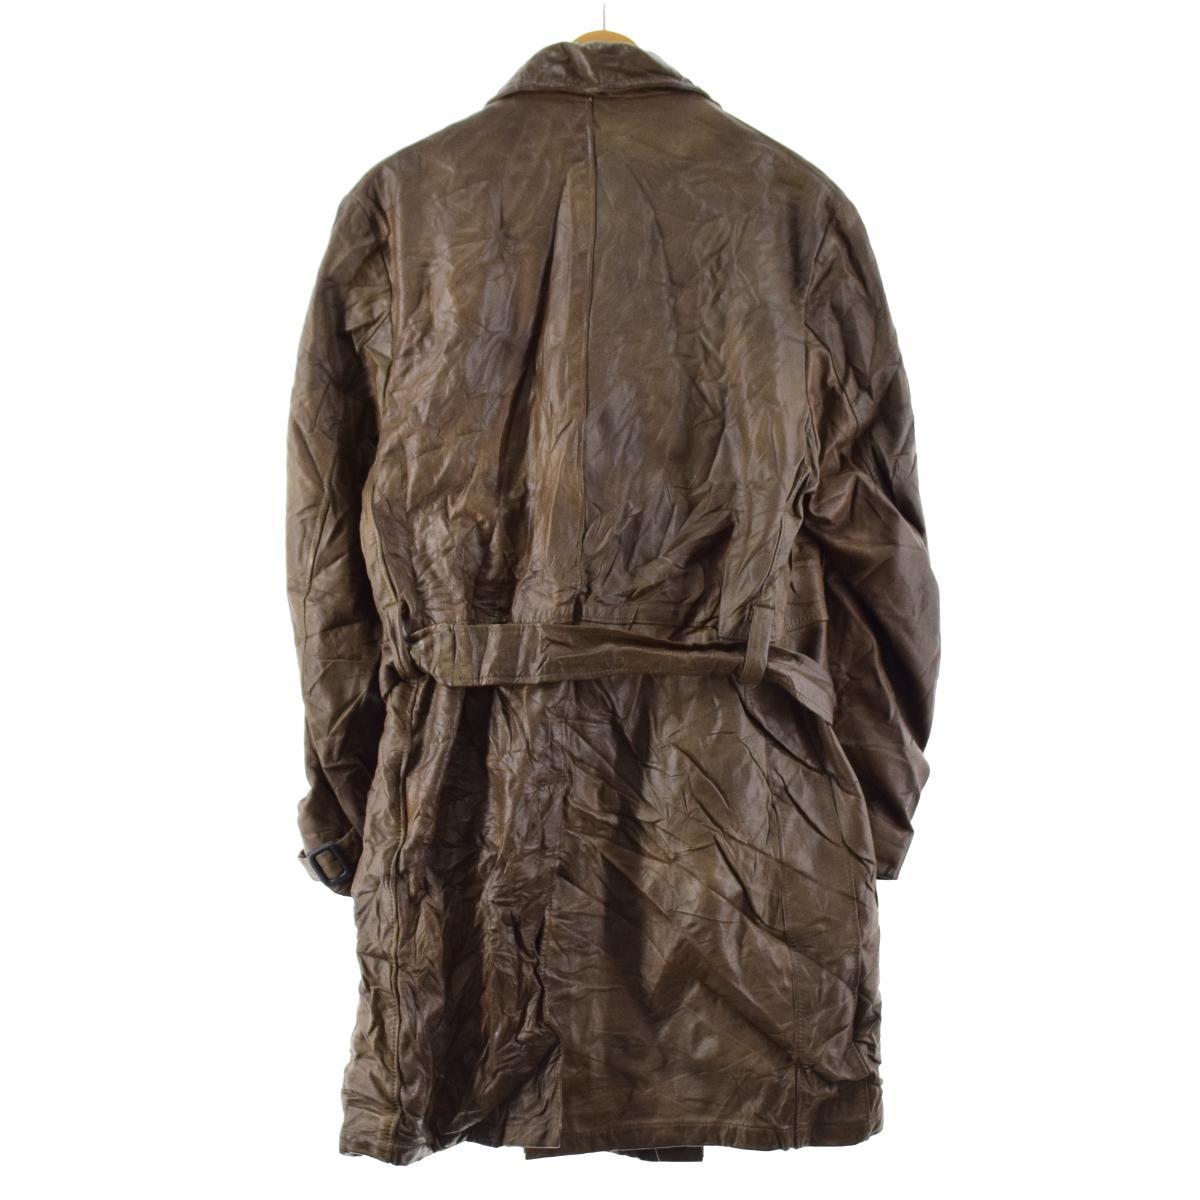  б/у одежда 60 годы Schott SCHOTT кожа пальто мужской M Vintage /eaa222801 [LP2311]